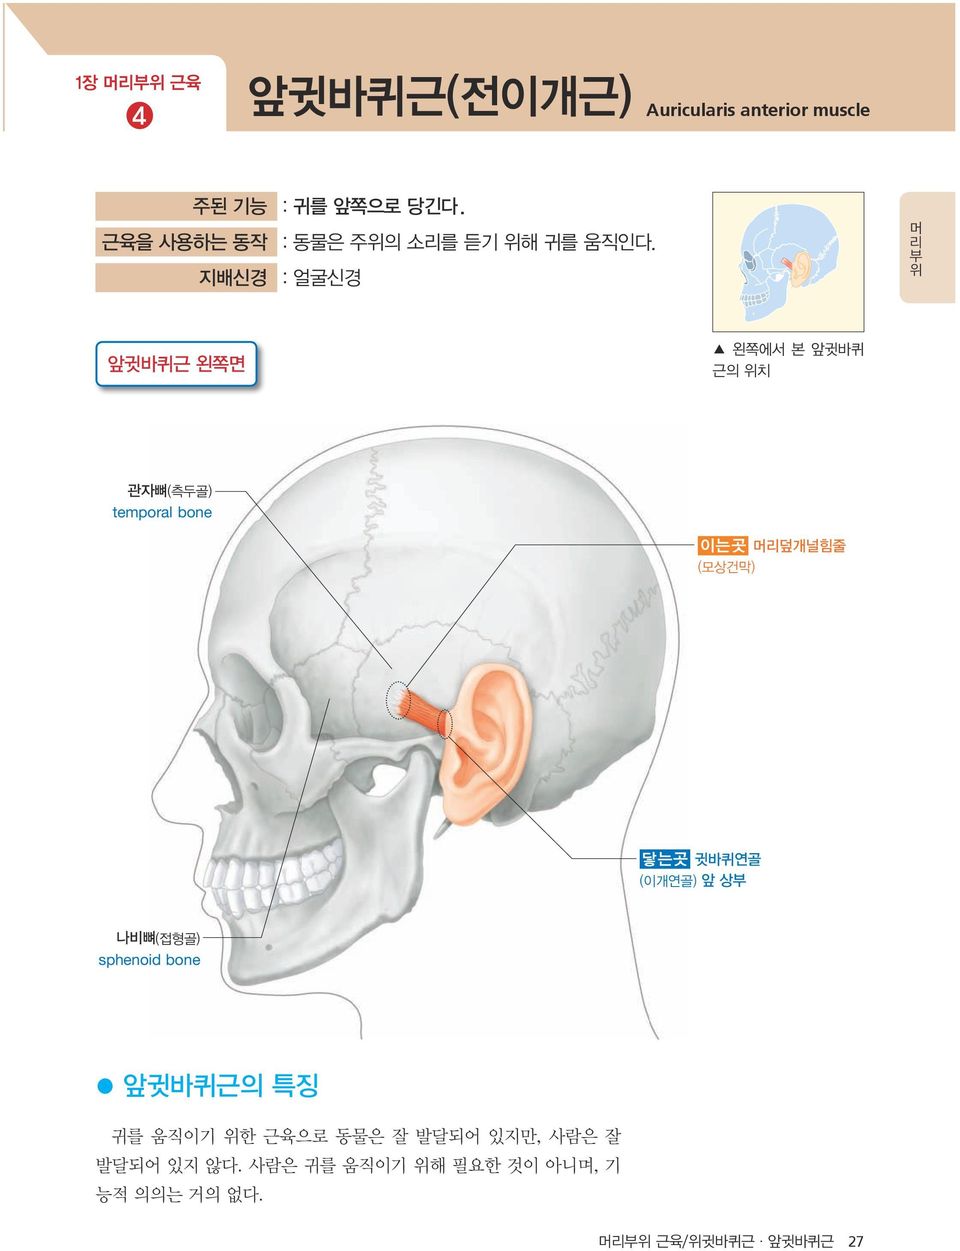 지배신경 : 얼굴신경 앞귓바퀴근 왼쪽면 왼쪽에서 본 앞귓바퀴 근의 위치 관자뼈(측두골) temporal bone 이는곳 머리덮개널힘줄 (모상건막) 닿는곳